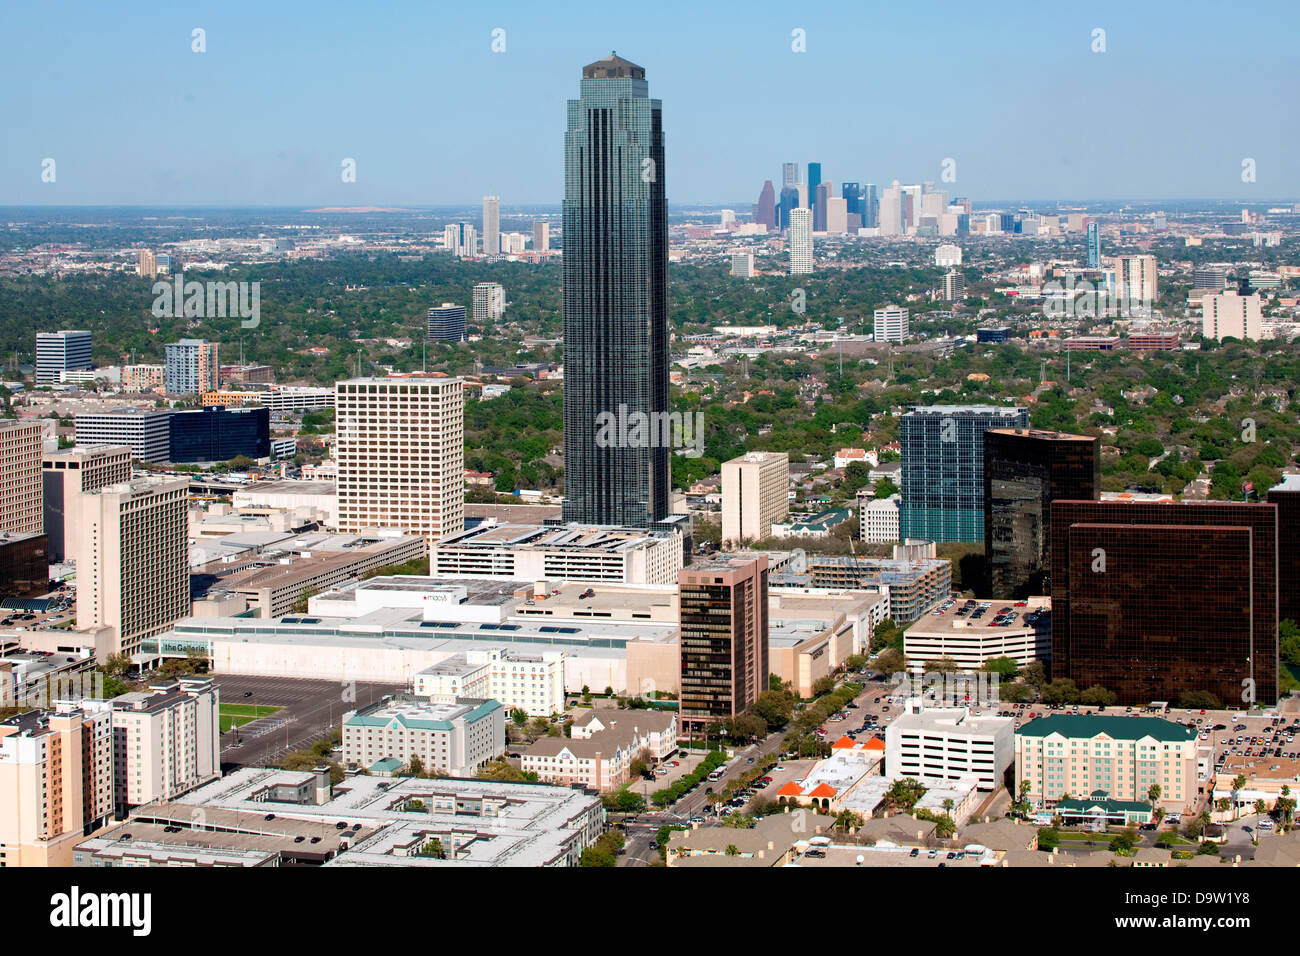 Houston Galleria reviews, photos - Uptown - Houston - GayCities Houston